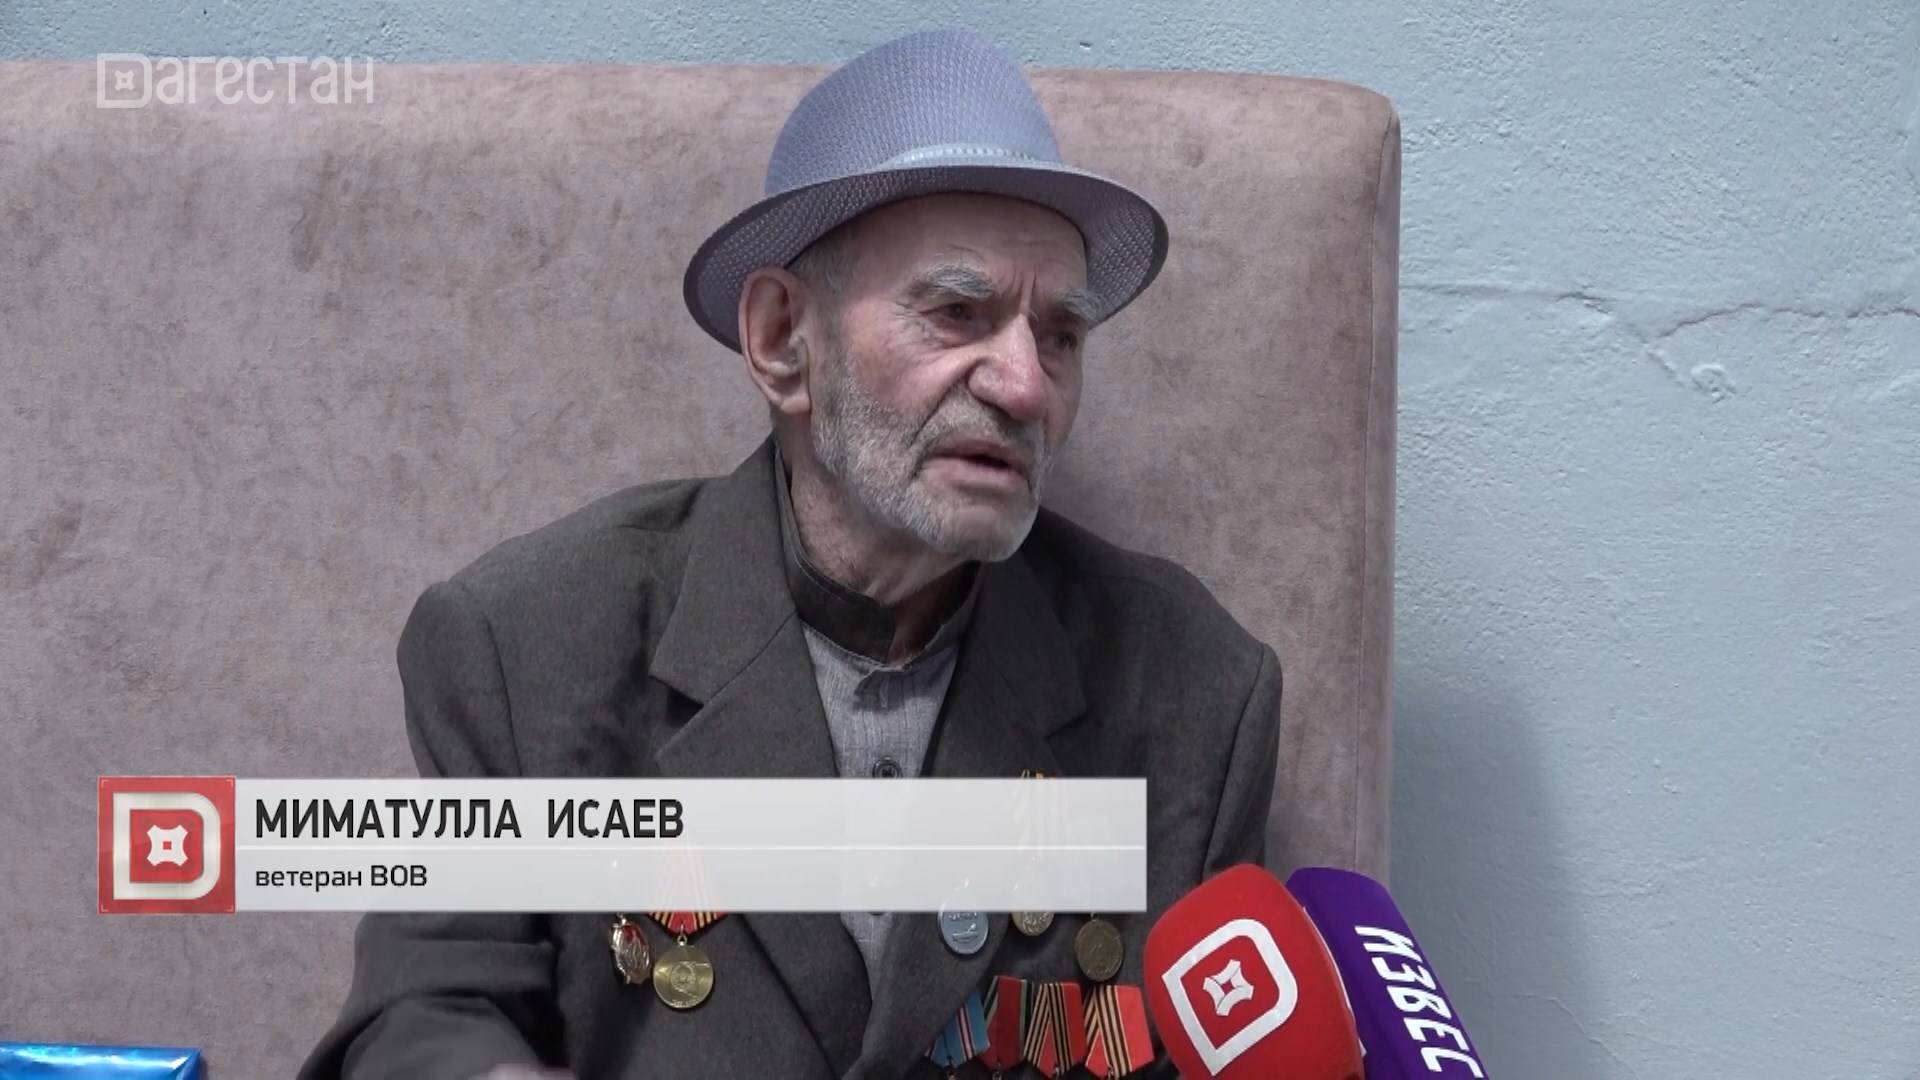 Ветеран Миматулла Исаев отметил 100-летний юбилей